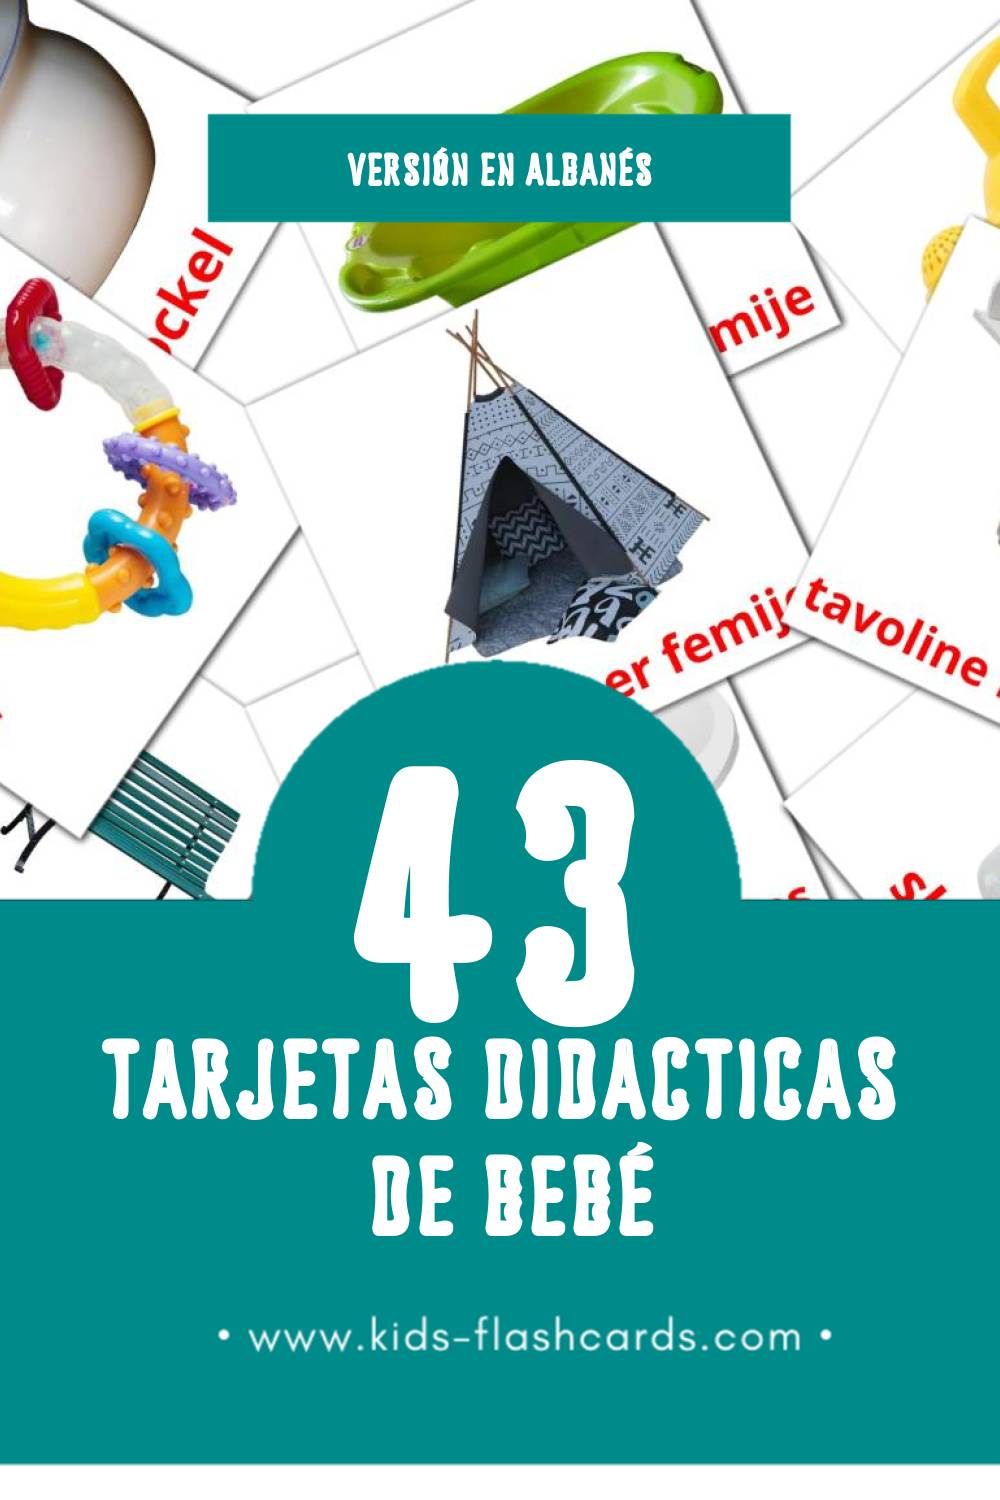 Tarjetas visuales de Rroba para niños pequeños (43 tarjetas en Albanés)